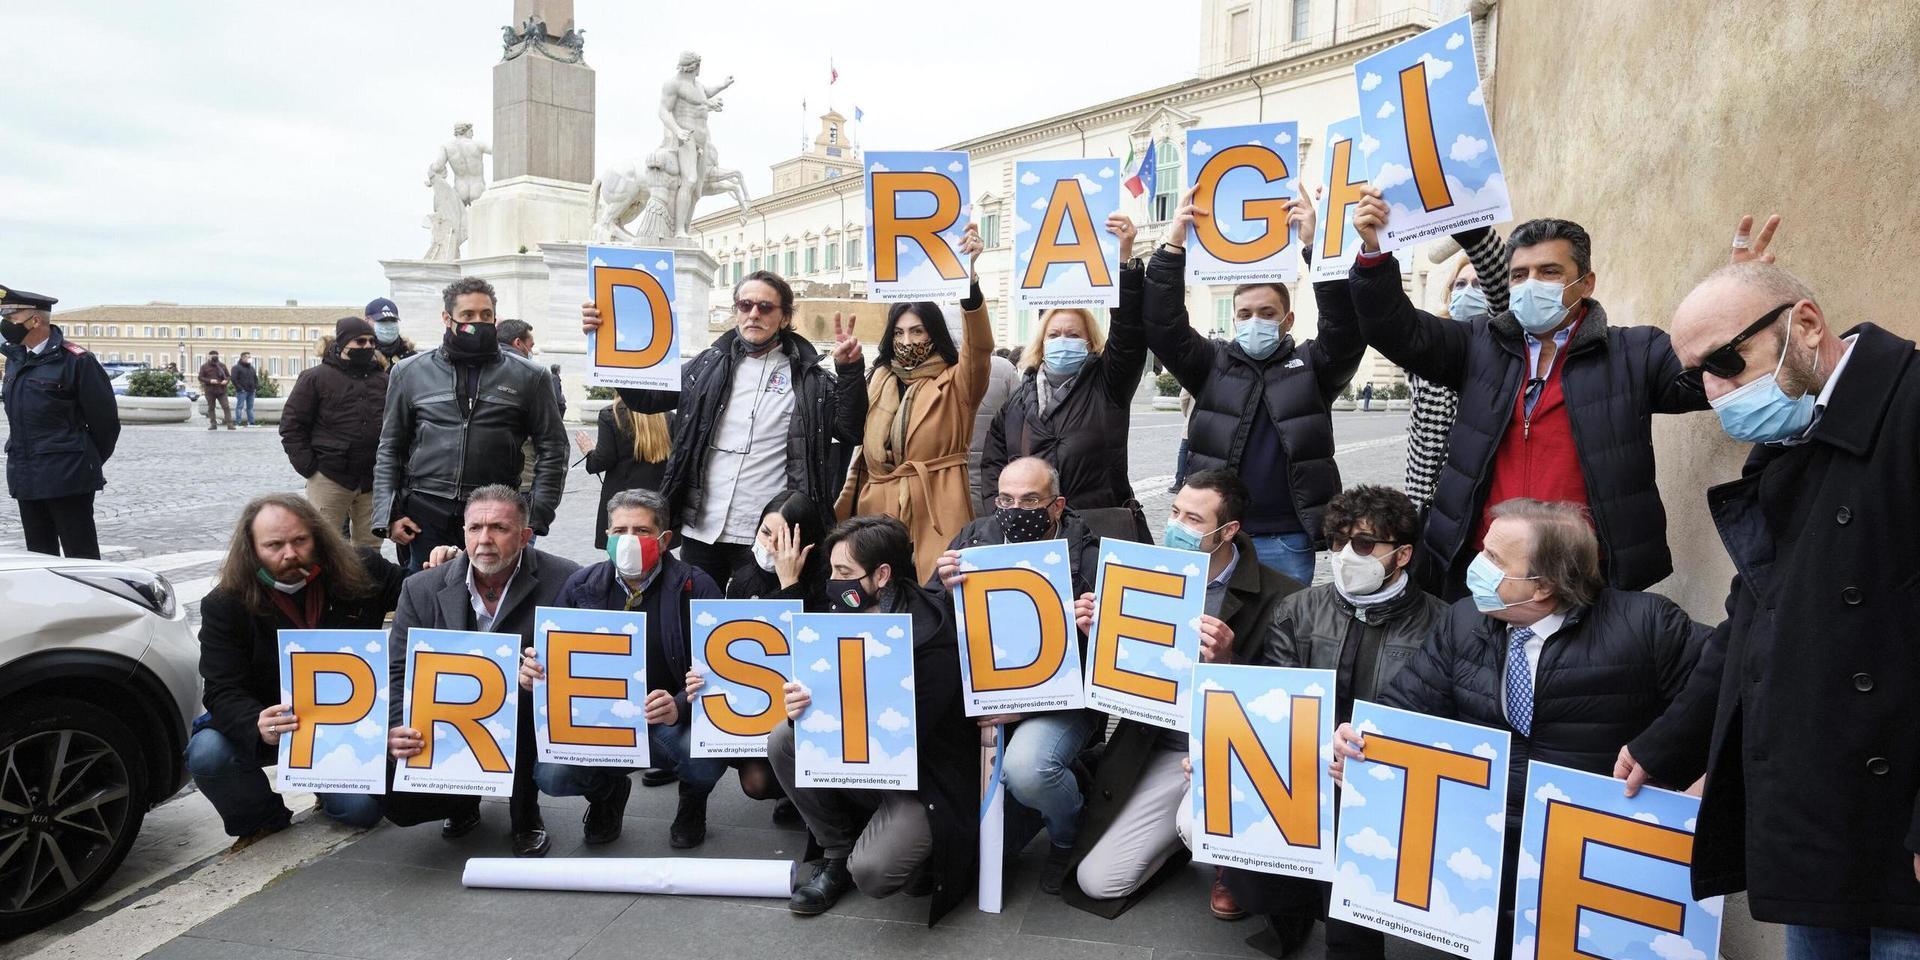 En grupp anhängare av Mario Draghi hade samlats utanför Quirinalpalatset i Rom på onsdagen, när han anlände för att få sonderingsuppdrag av presidenten.